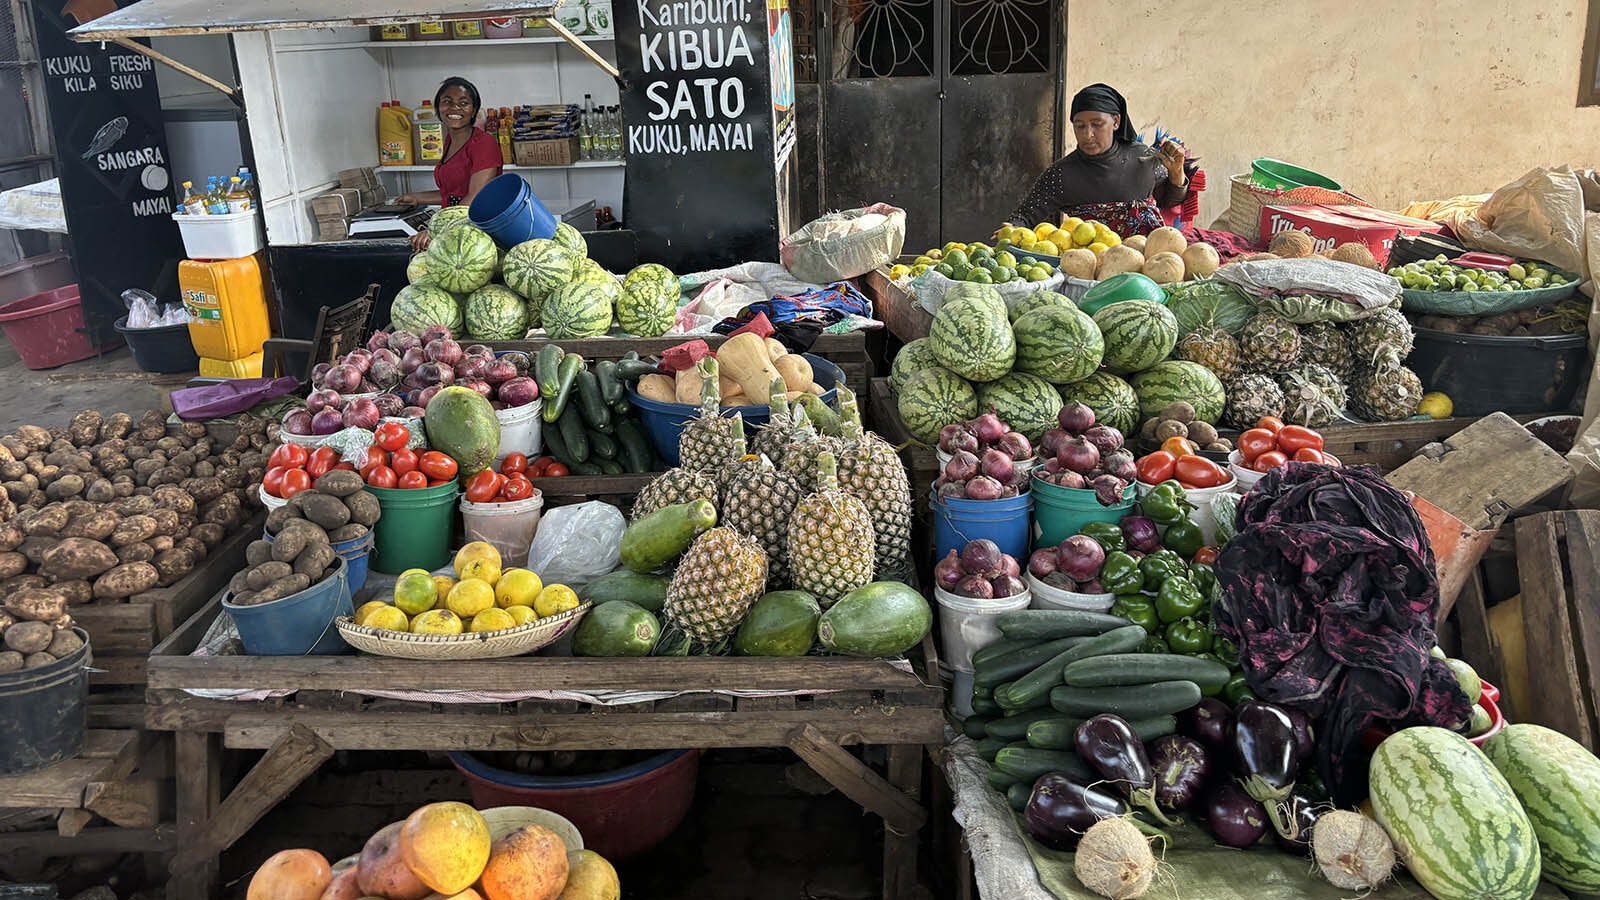 A market in Tanzania.